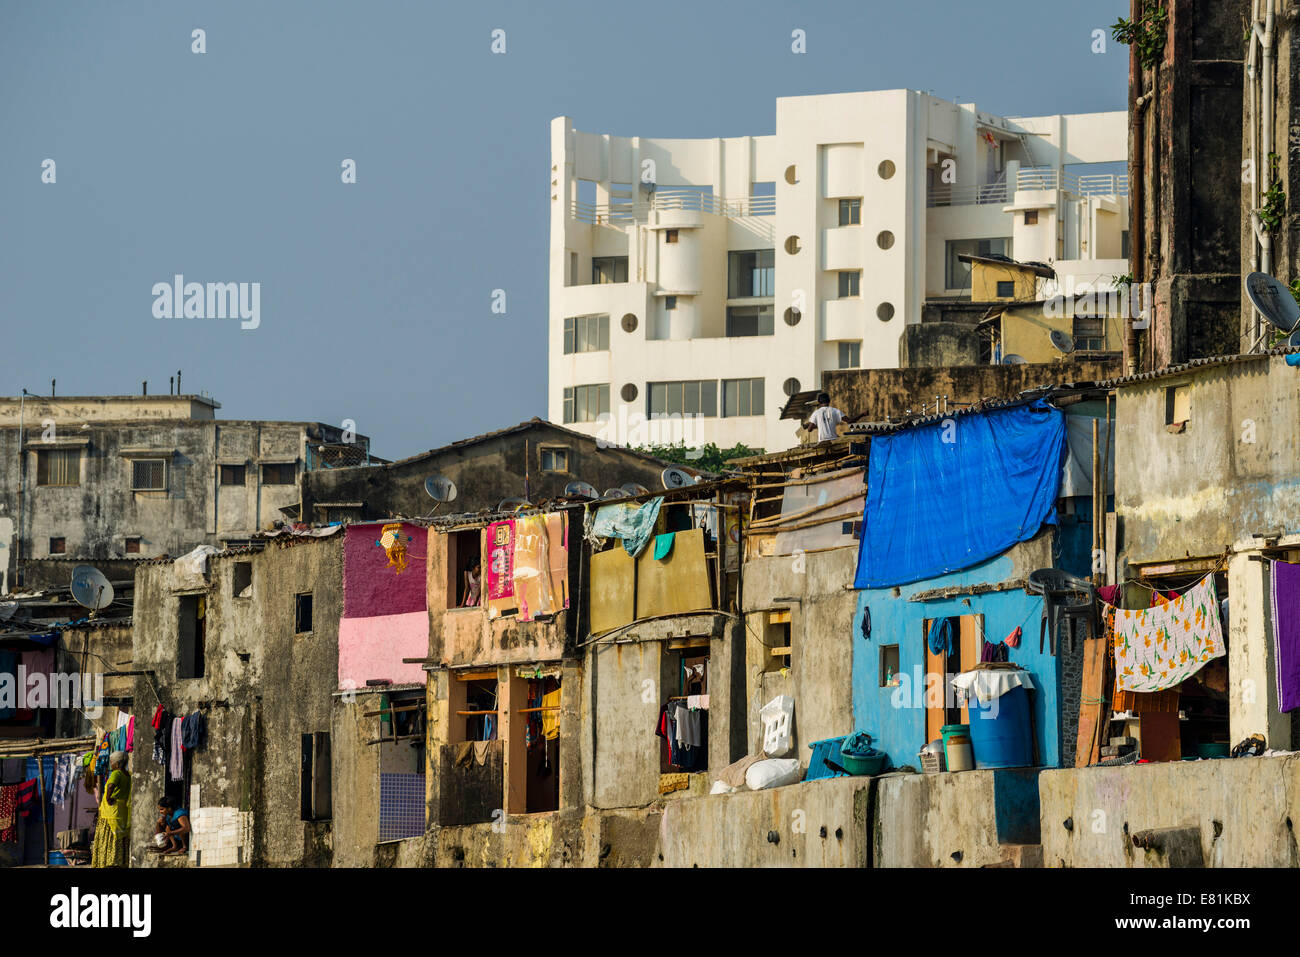 Maisons typiques de pauvres Indiens de la classe ouvrière en face d'un bâtiment résidentiel moderne, Mumbai, Maharashtra, Inde Banque D'Images